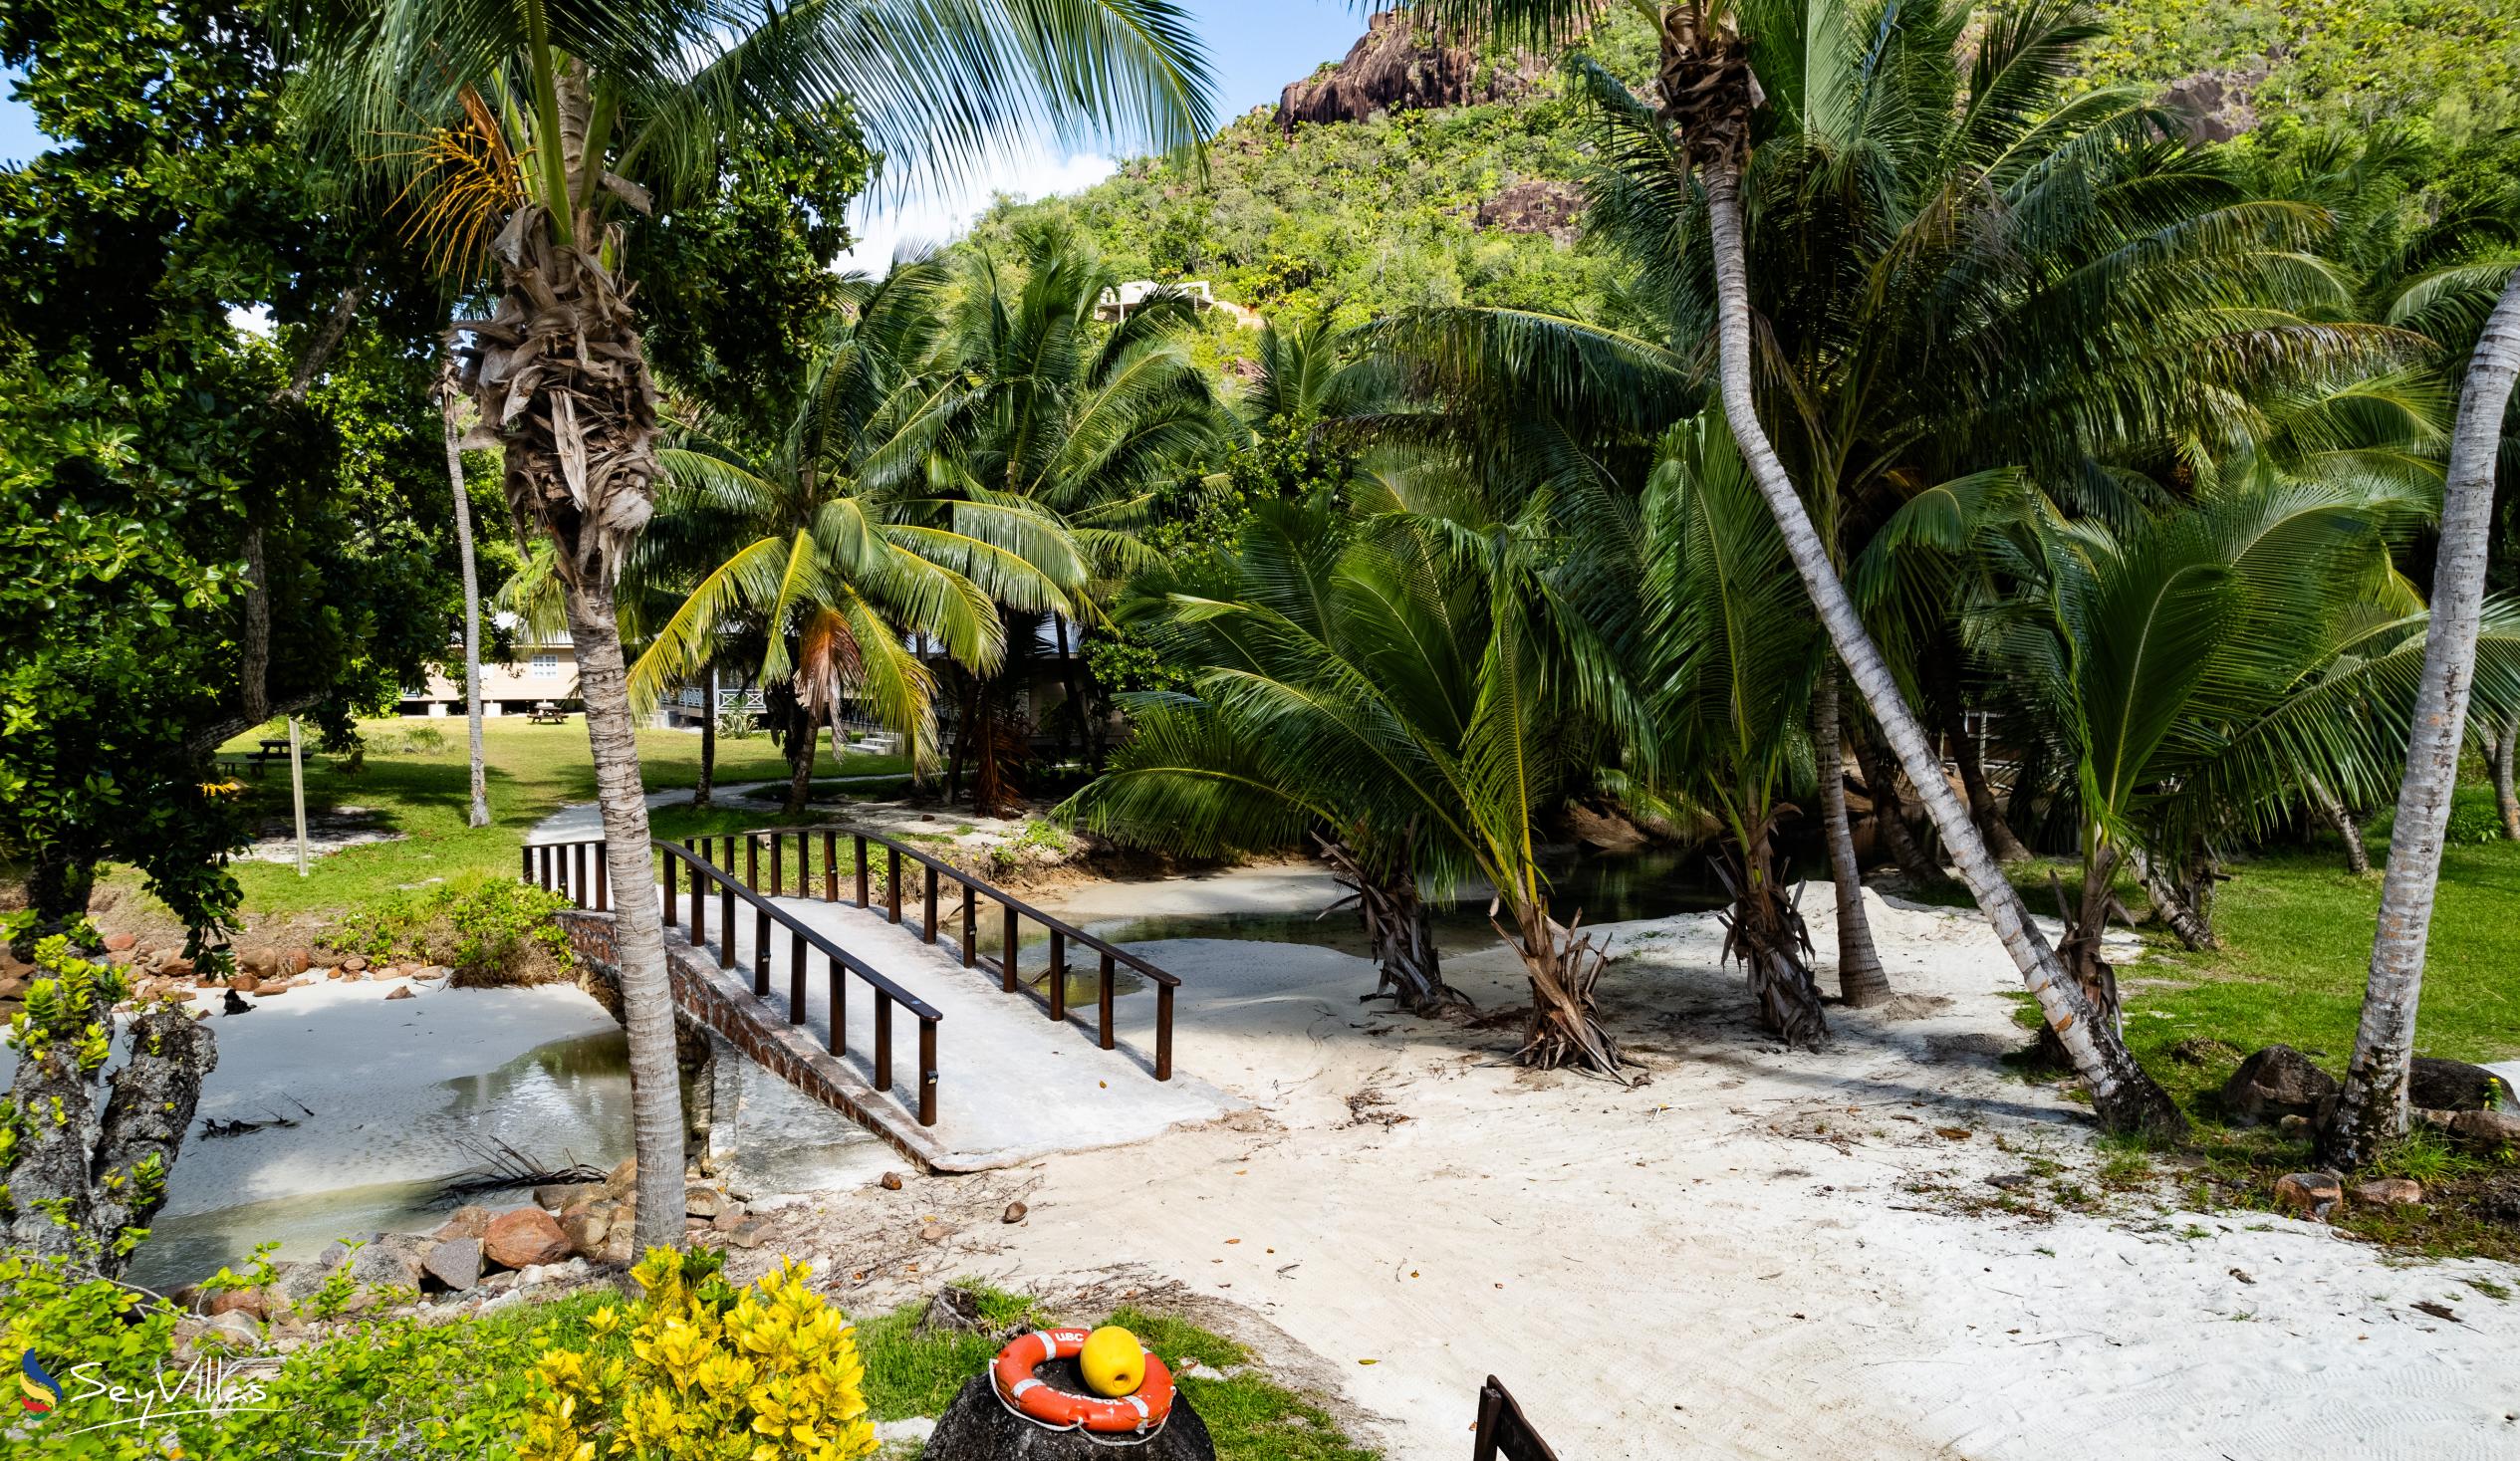 Photo 14: Le Vasseur La Buse Eco Resort - Outdoor area - Praslin (Seychelles)